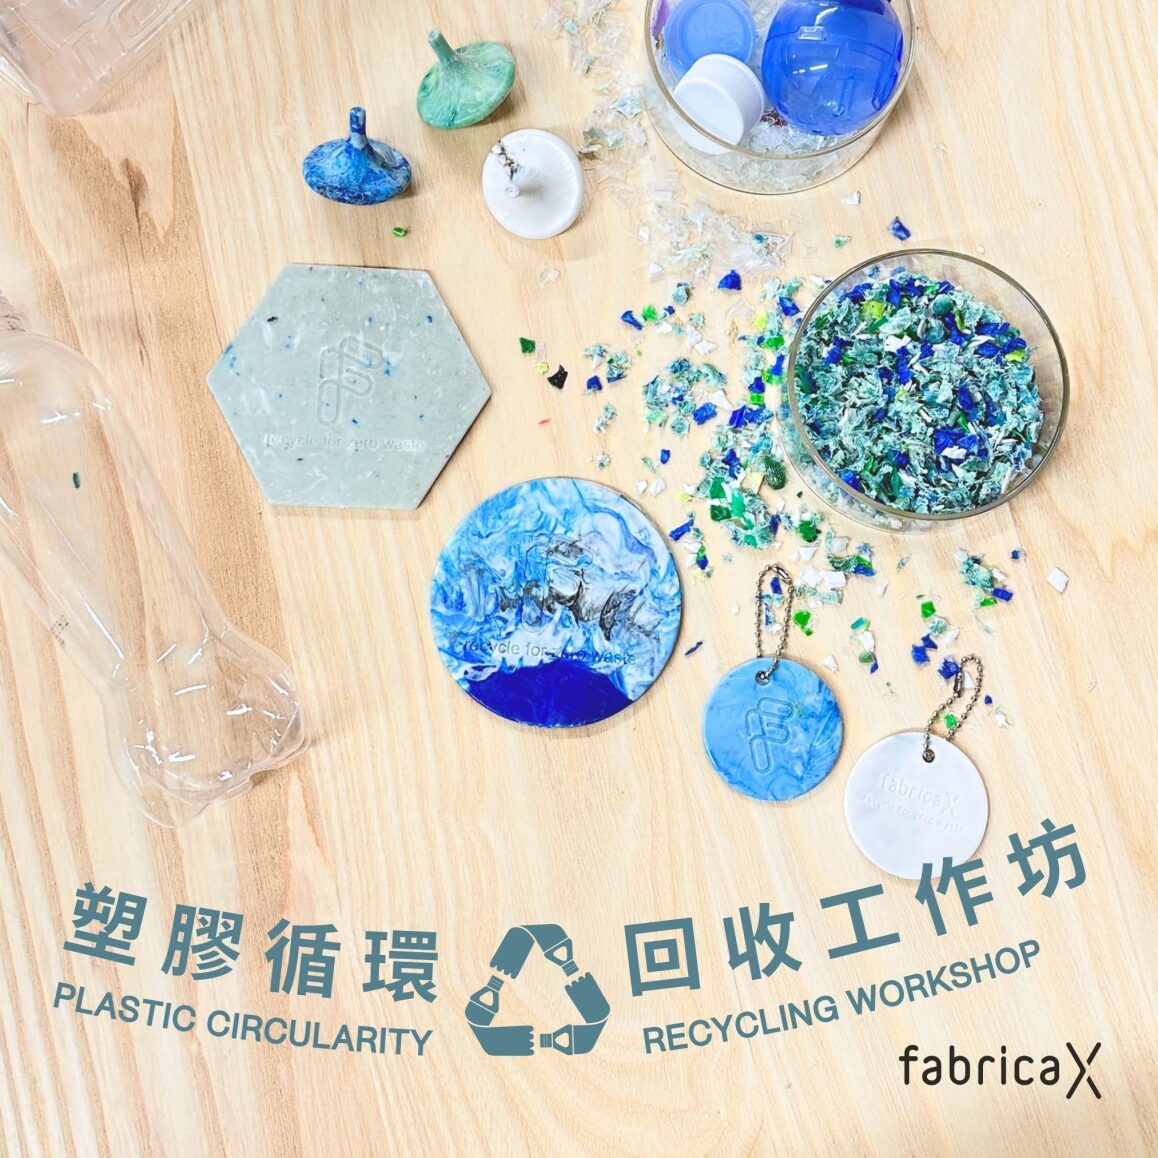 塑胶循环 - 回收工作坊